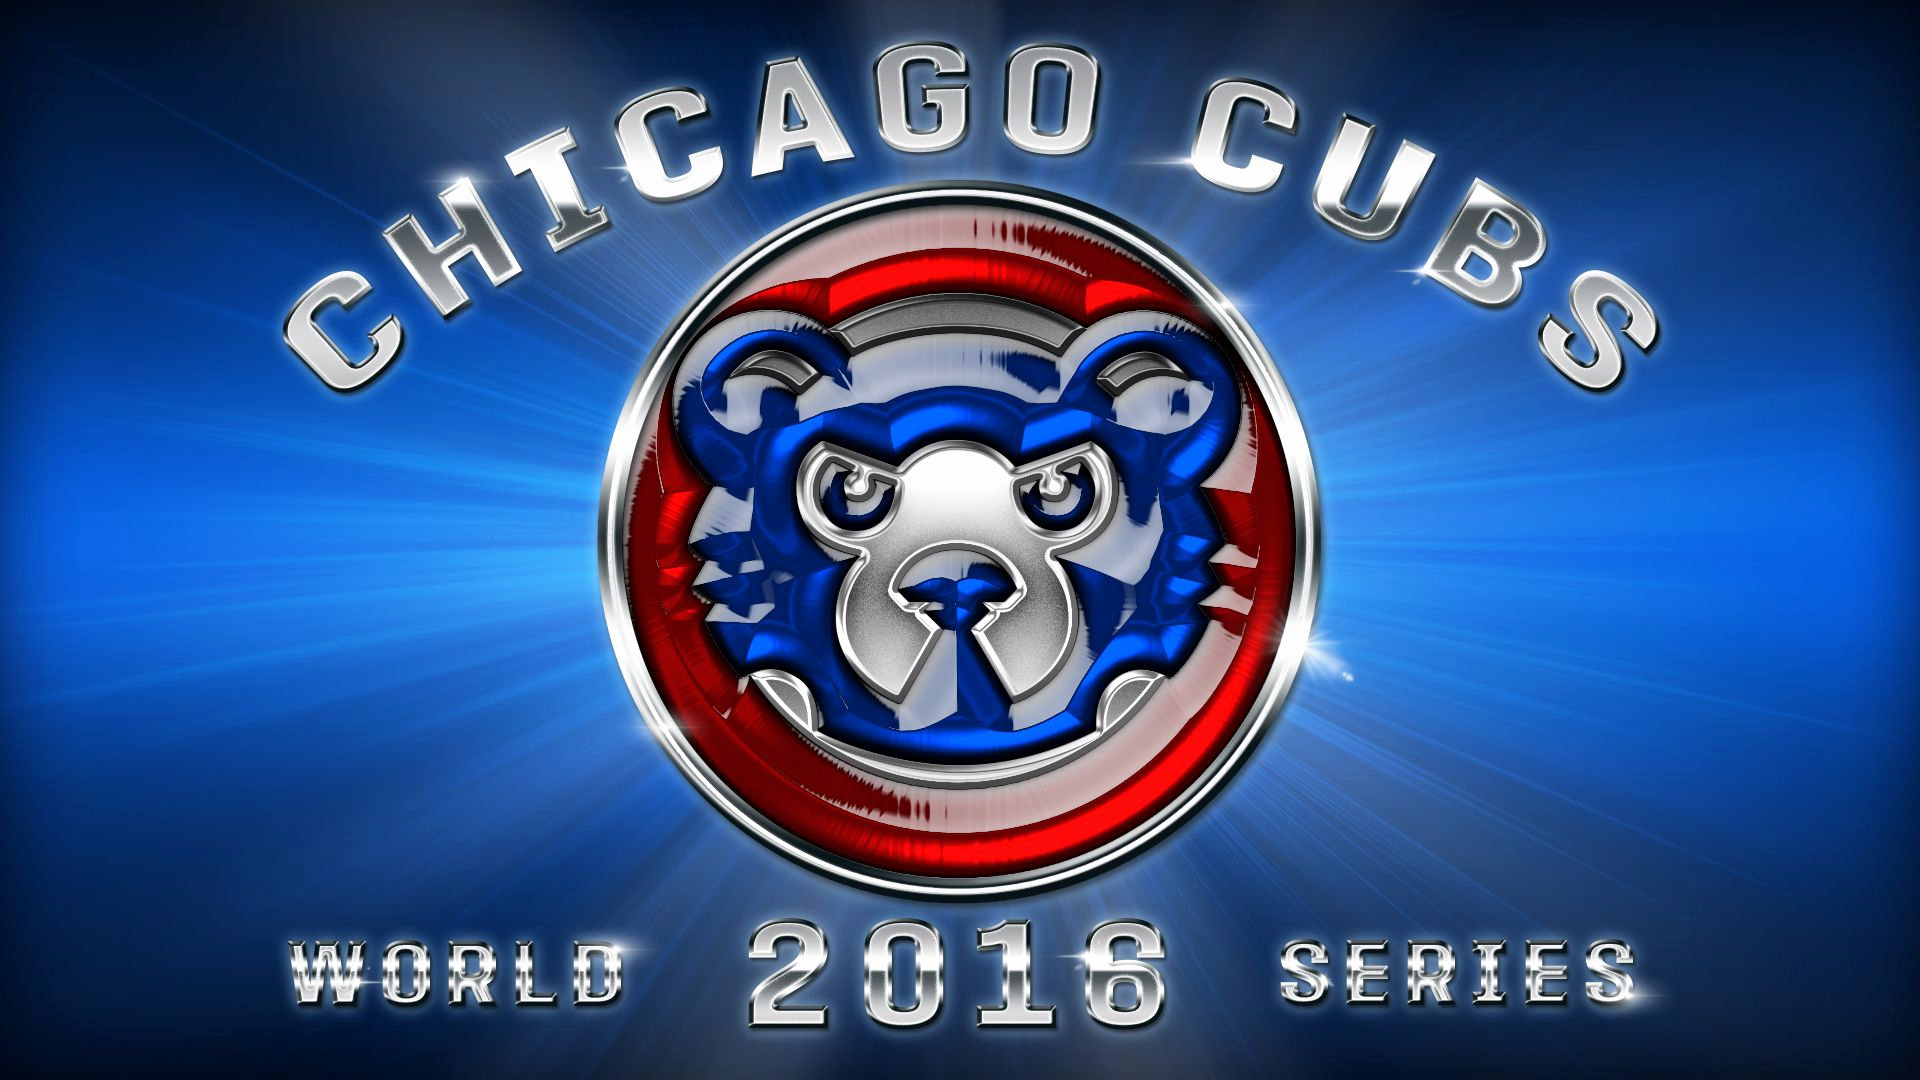 1920x1080, Chicago Cubs Wallpaper Unique Hd Wrigley - Cool Chicago Cubs Logos - HD Wallpaper 